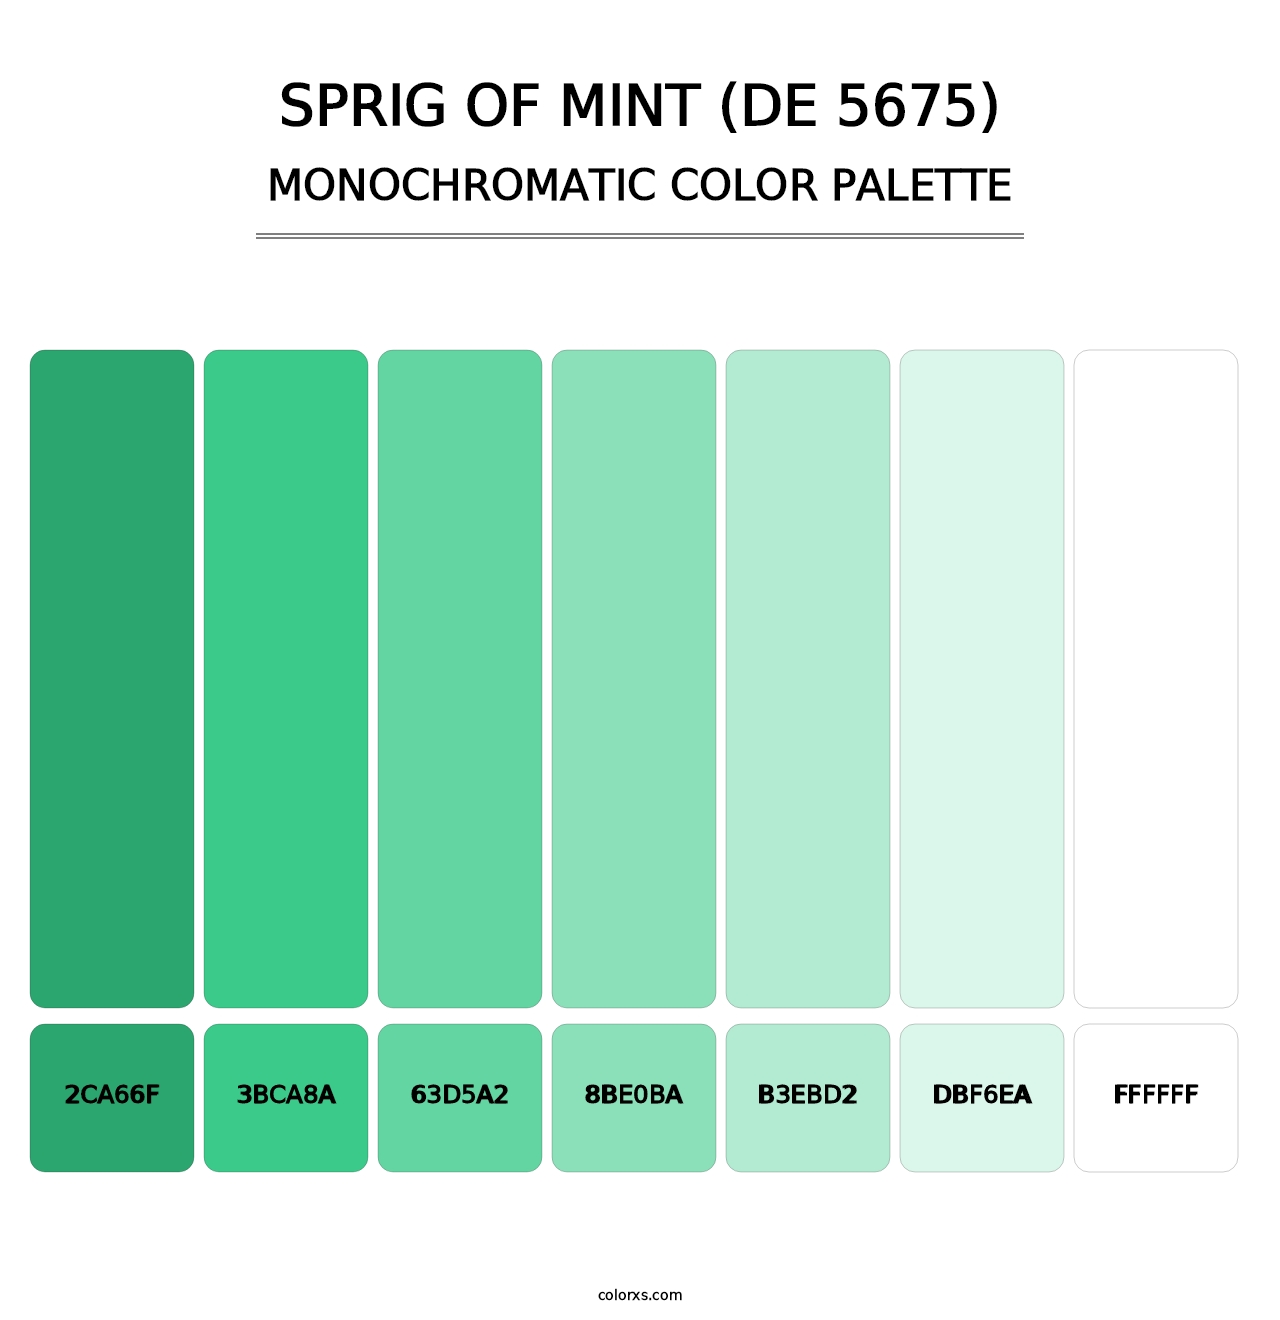 Sprig of Mint (DE 5675) - Monochromatic Color Palette